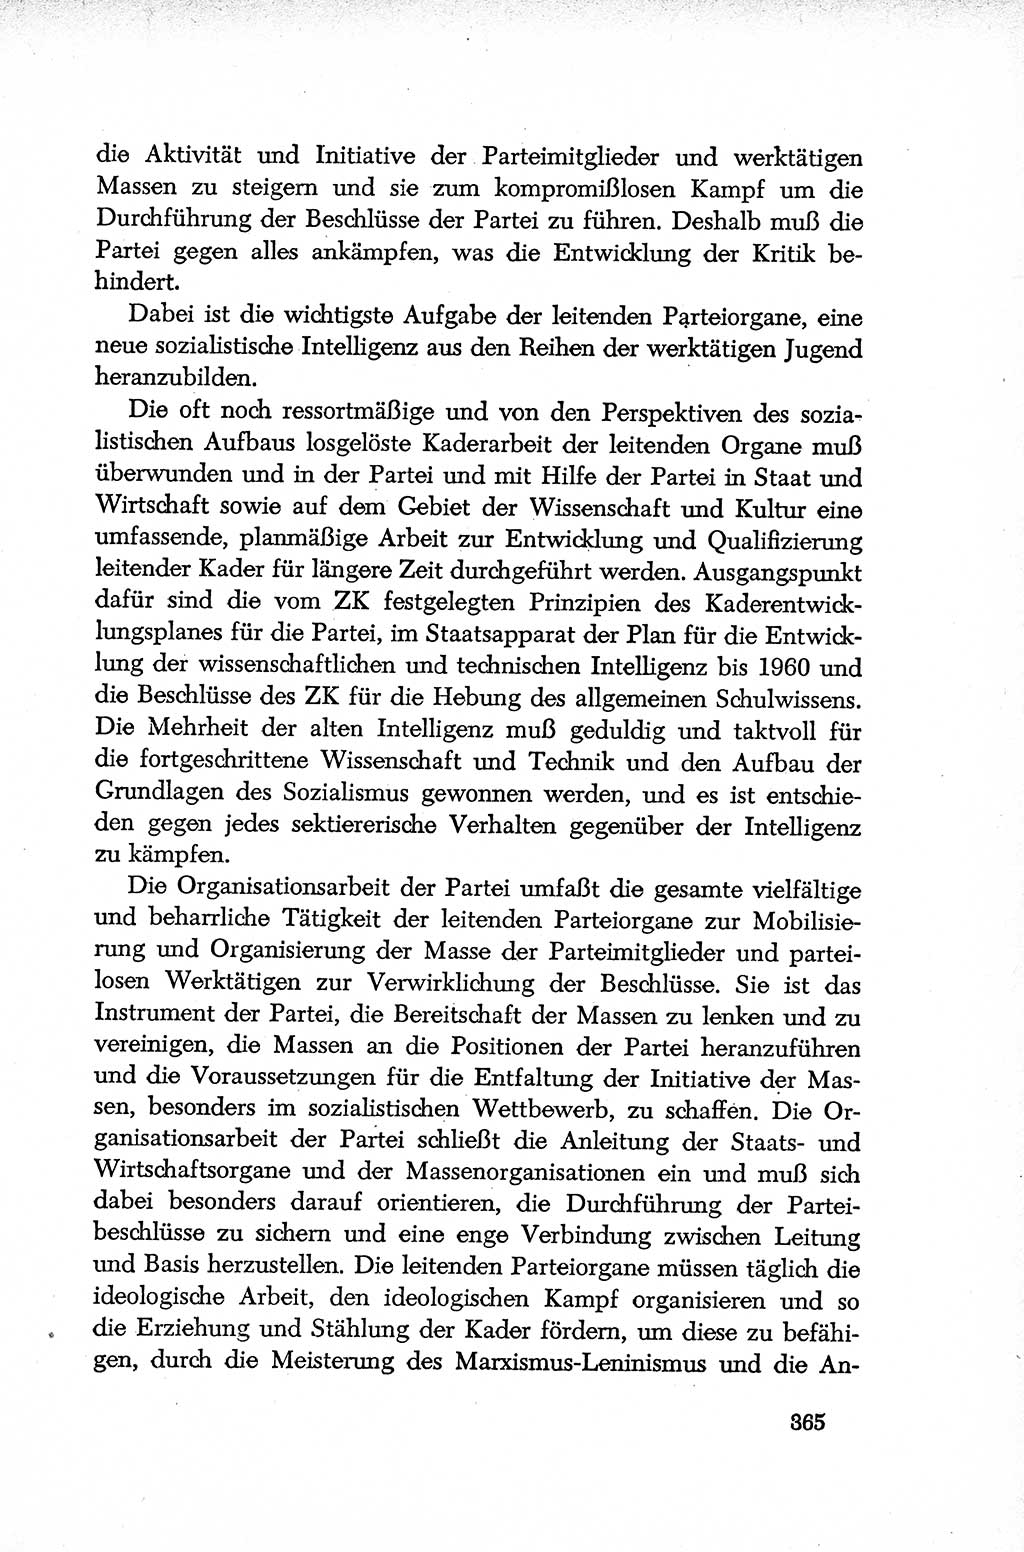 Dokumente der Sozialistischen Einheitspartei Deutschlands (SED) [Deutsche Demokratische Republik (DDR)] 1952-1953, Seite 365 (Dok. SED DDR 1952-1953, S. 365)